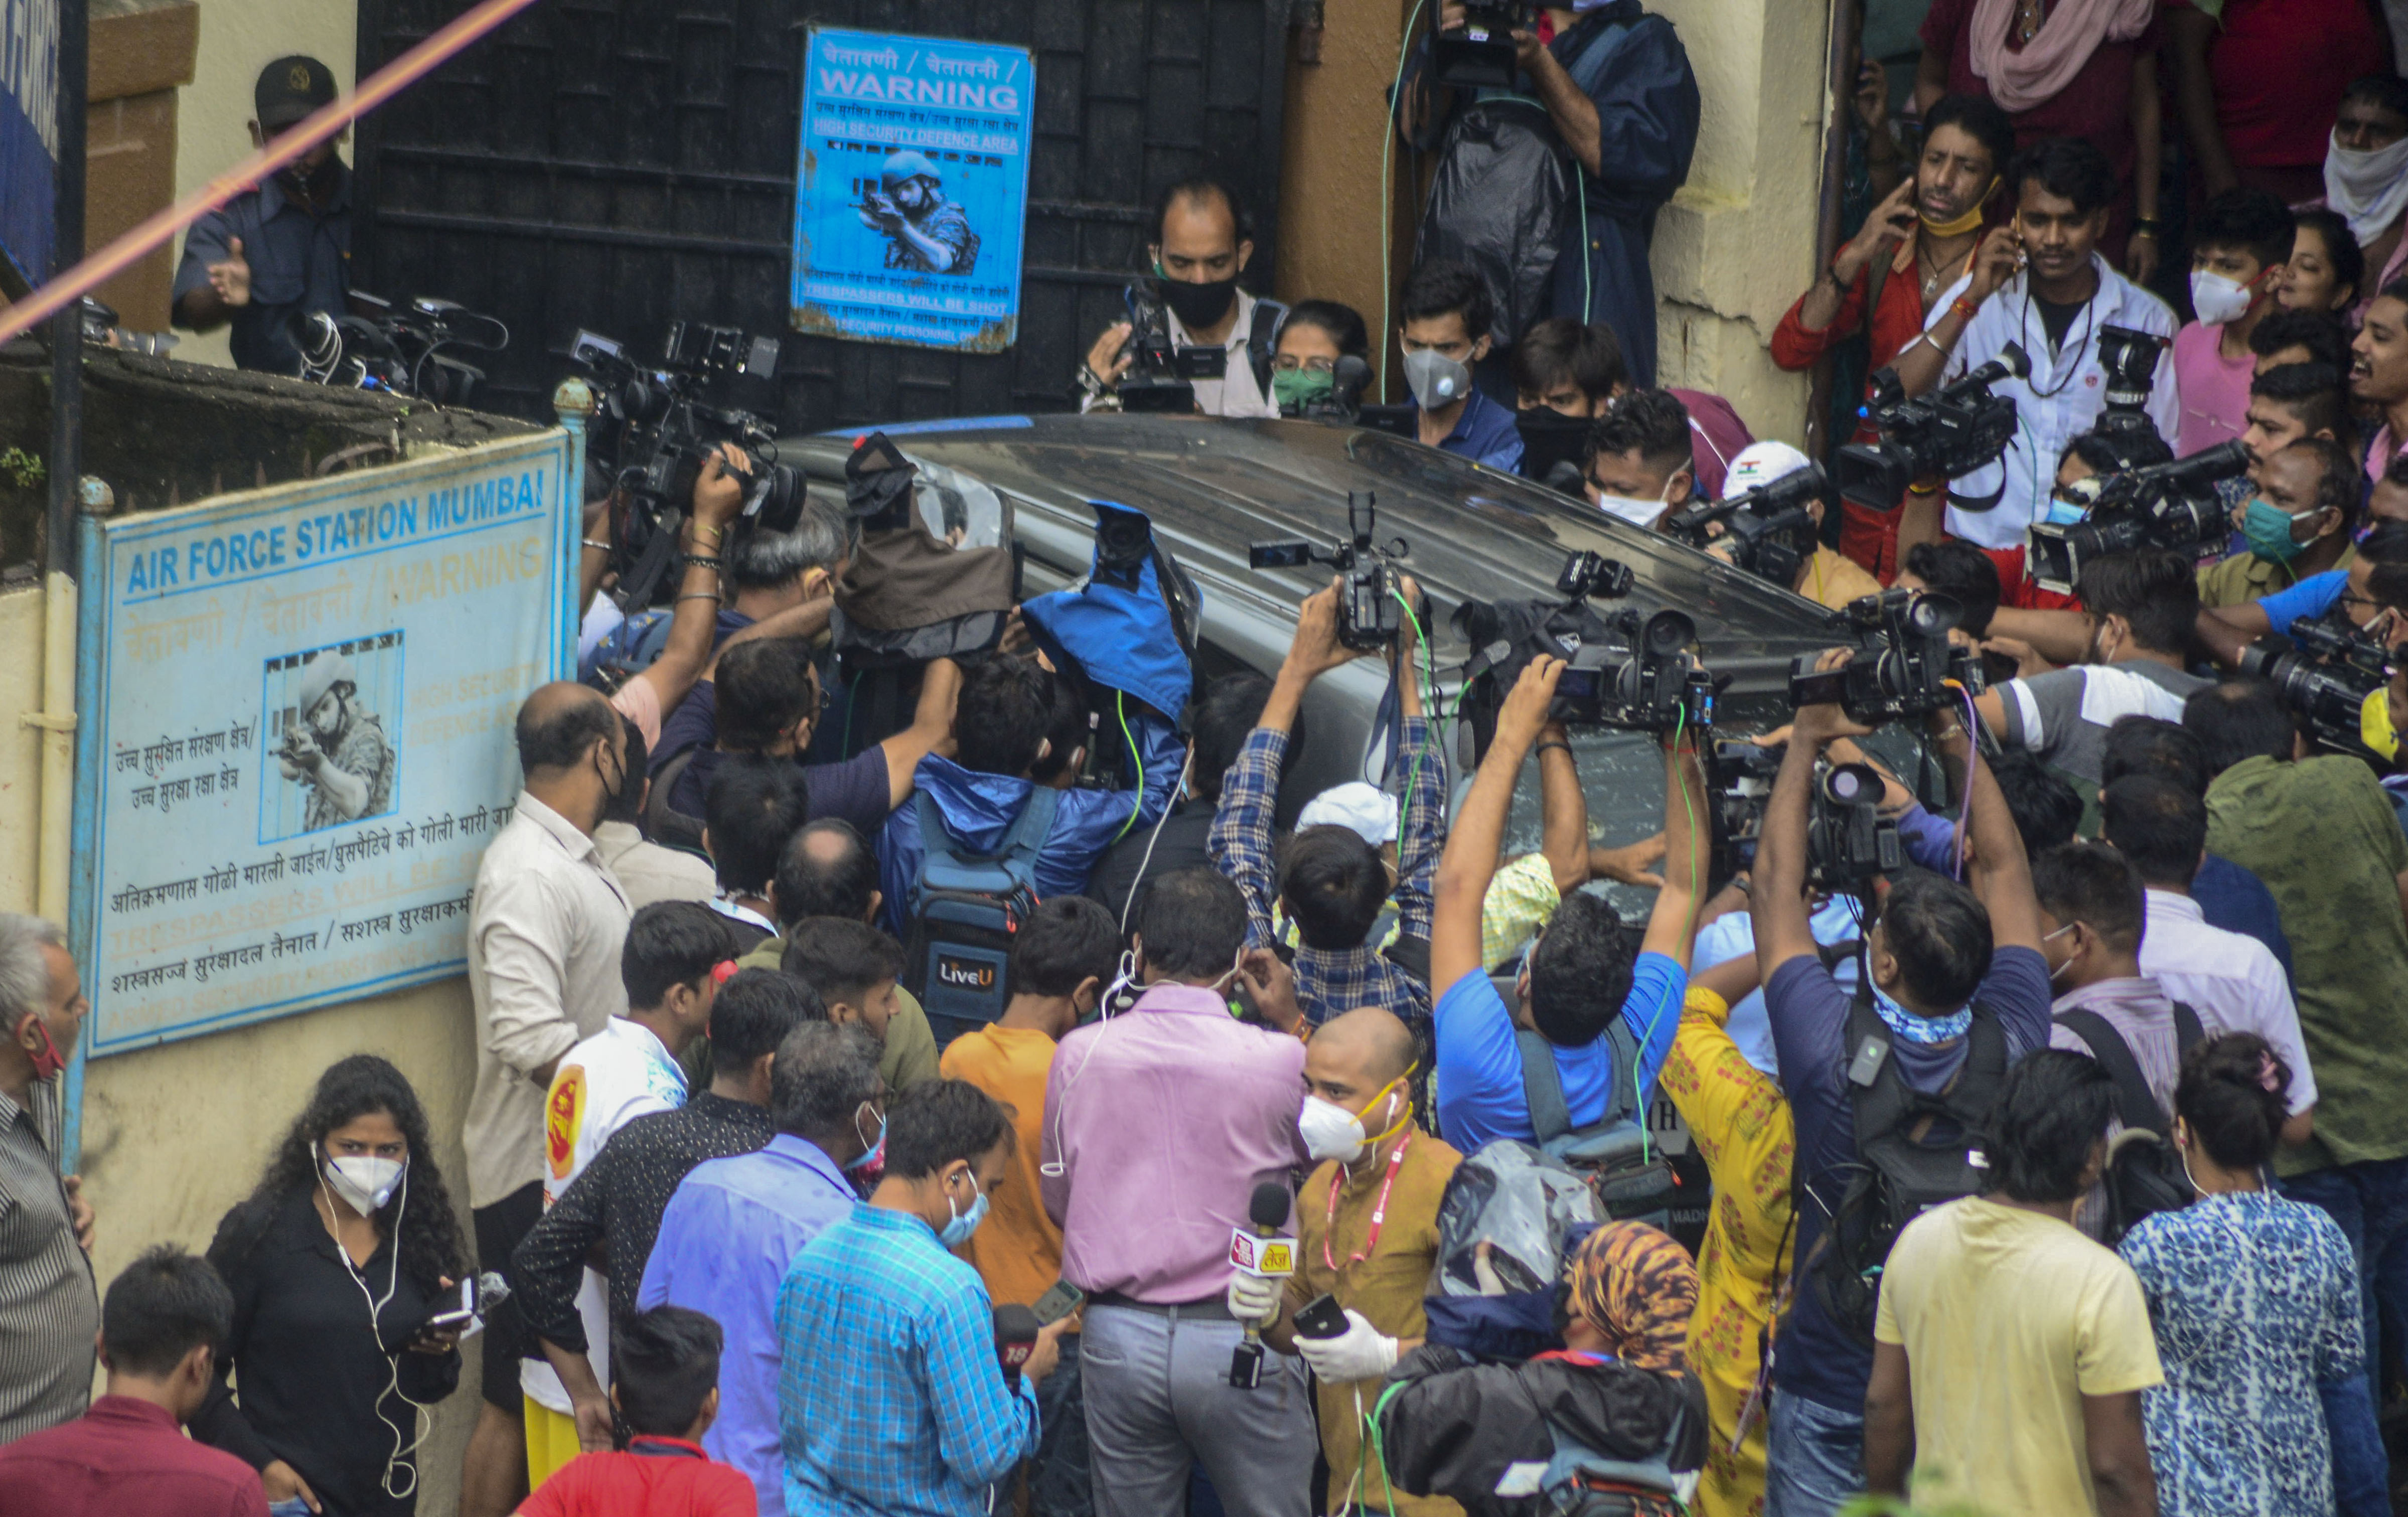 28 अगस्त को डीआरडीओ गेस्ट हाउस के बहार रिया चक्रवर्ती की गाड़ी को घेरे मीडियाकर्मी. (फोटो: पीटीआई)